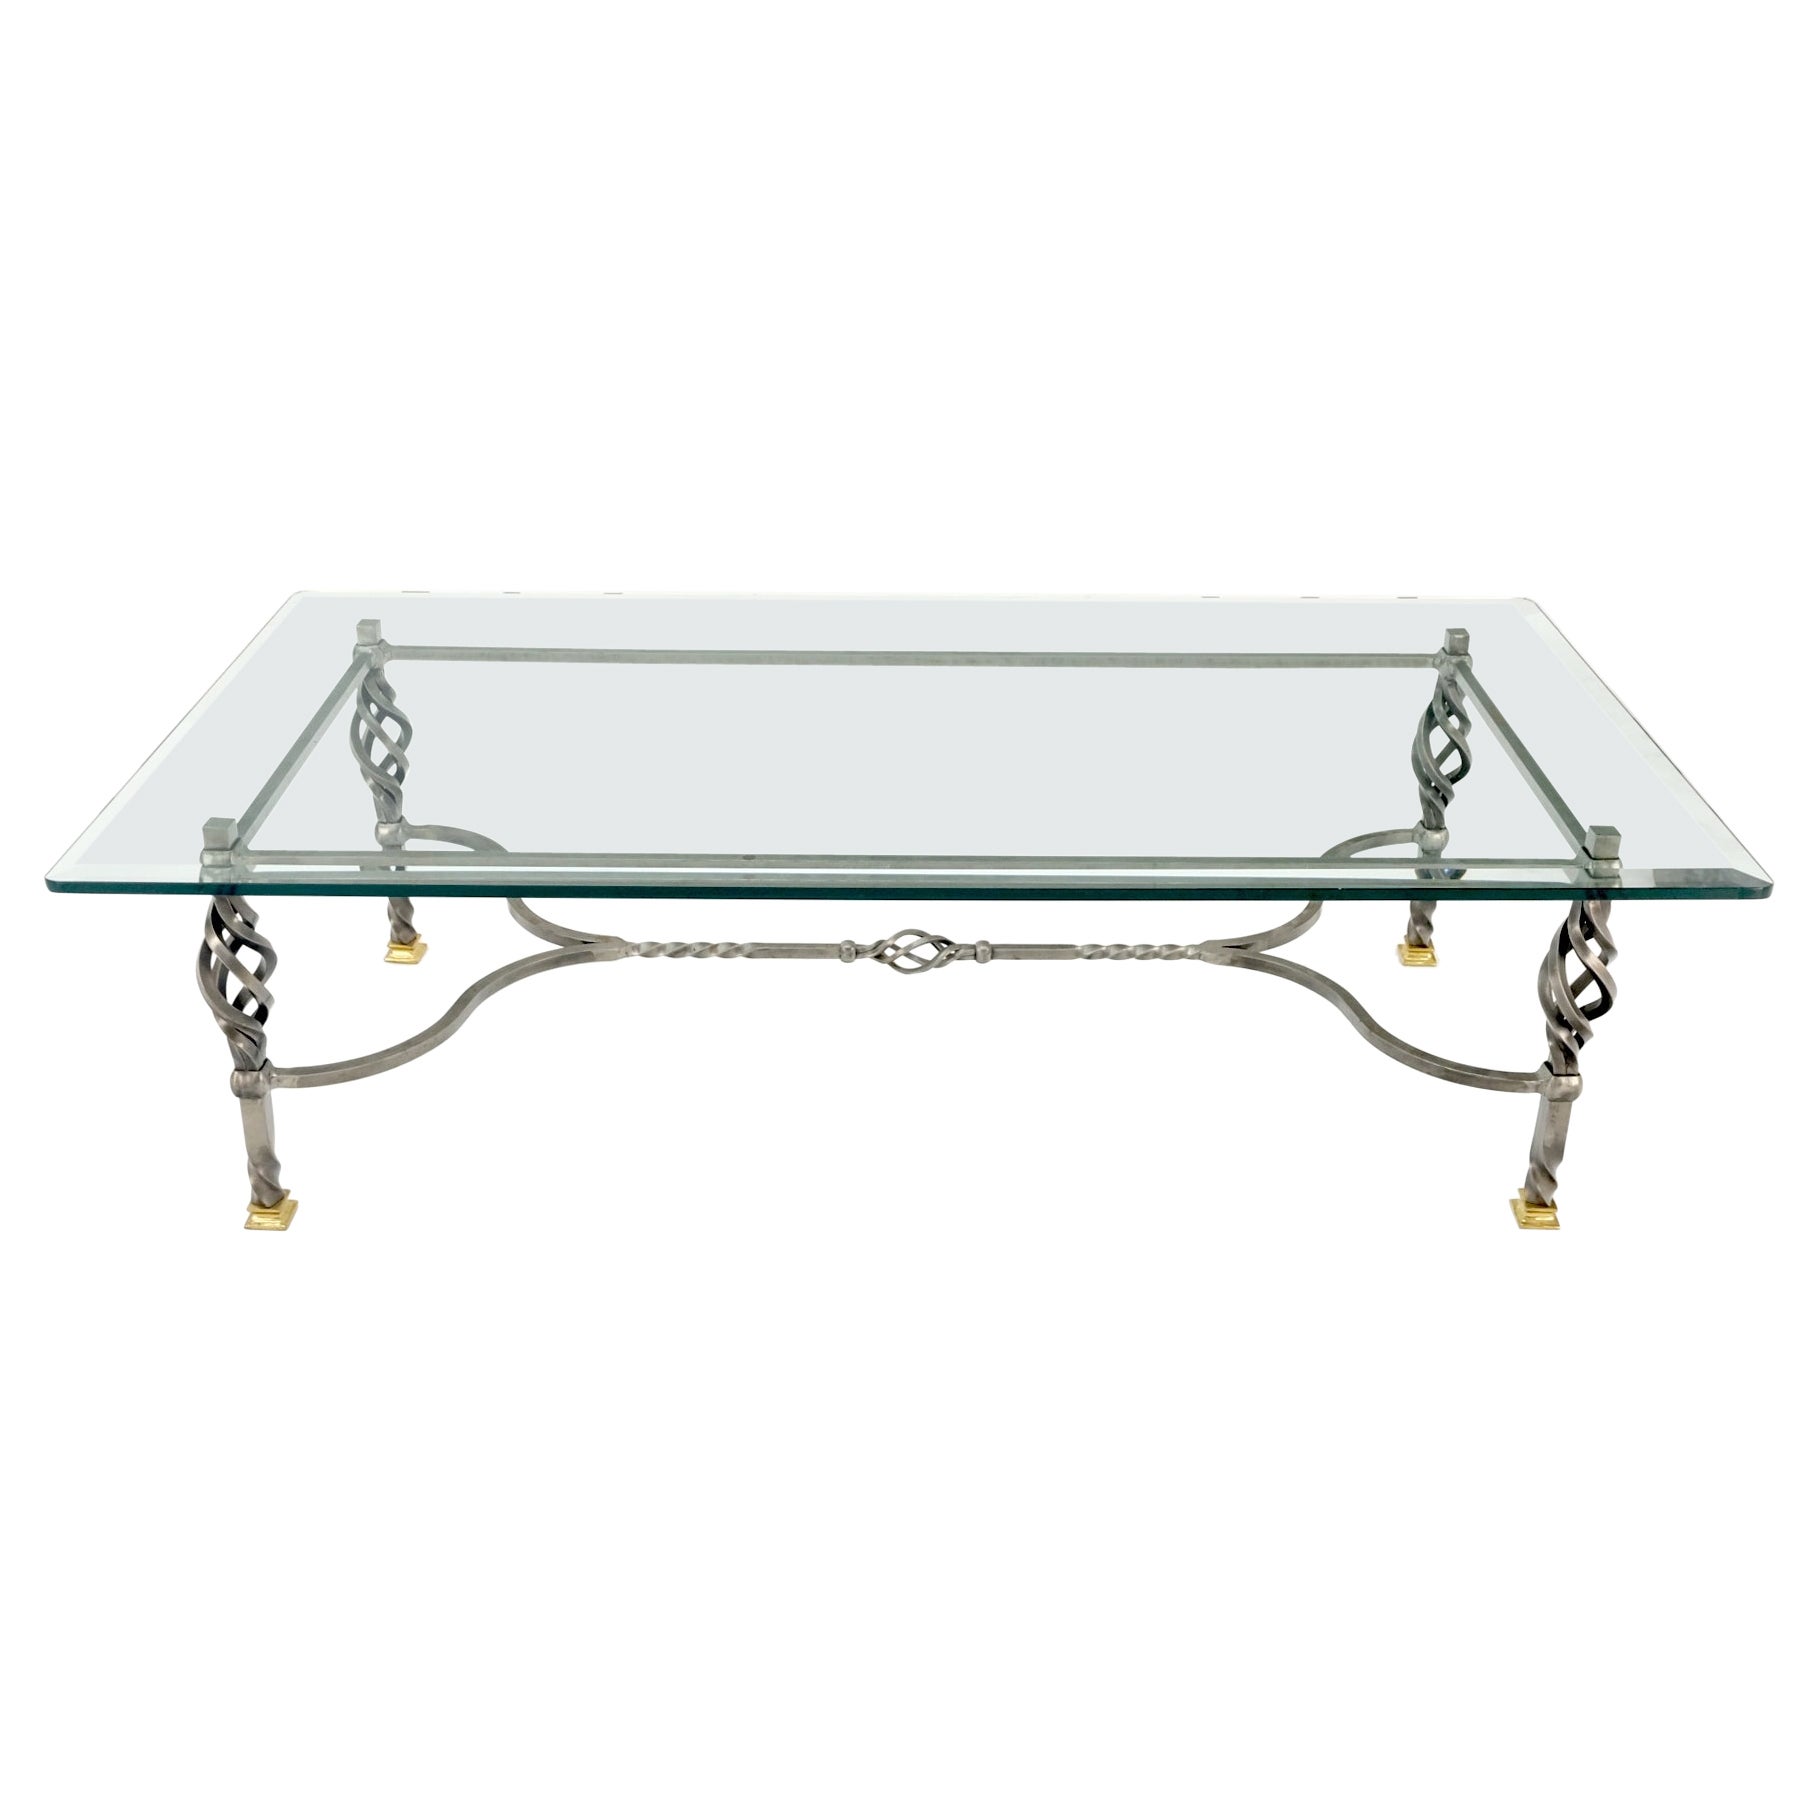 Table basse rectangulaire en fer forgé Art Ornamental Pieds en laiton Plateau en verre MINT